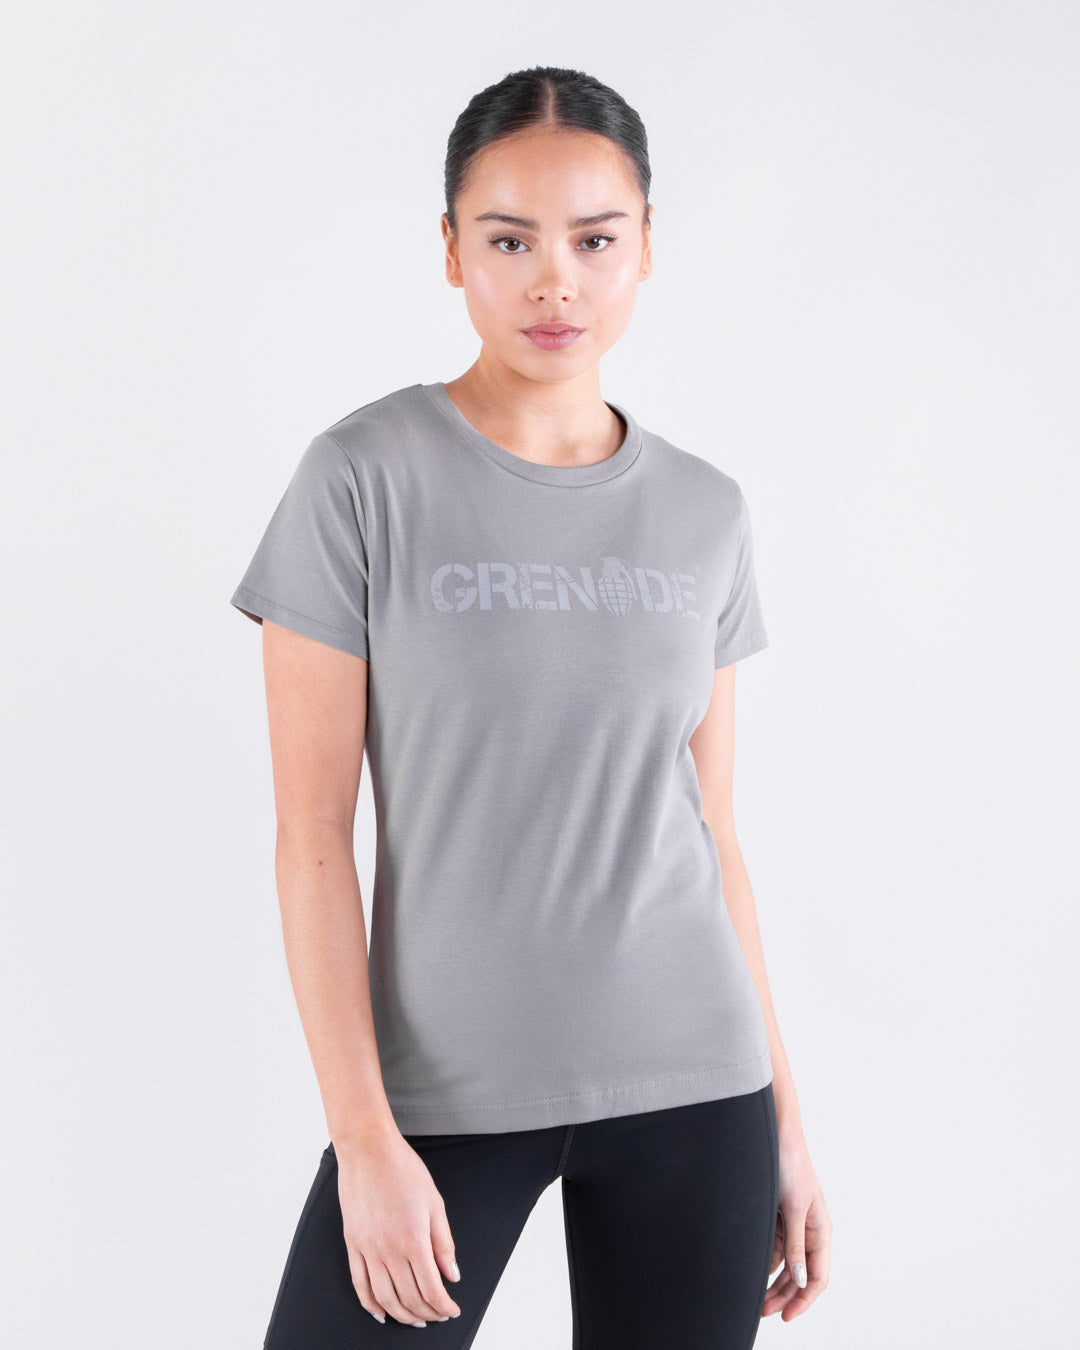 Grenade Womens Core T Shirt Grey